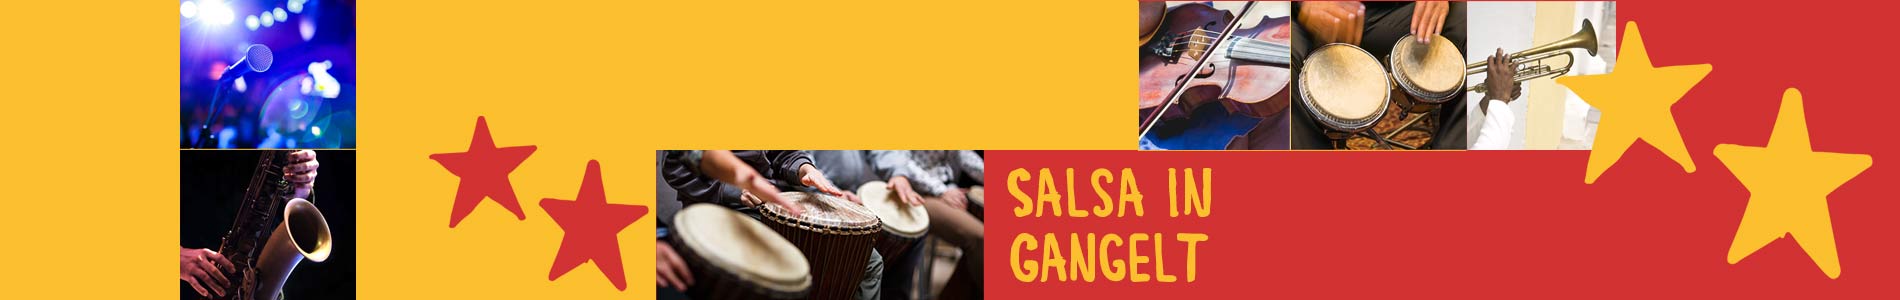 Salsa in Gangelt – Salsa lernen und tanzen, Tanzkurse, Partys, Veranstaltungen